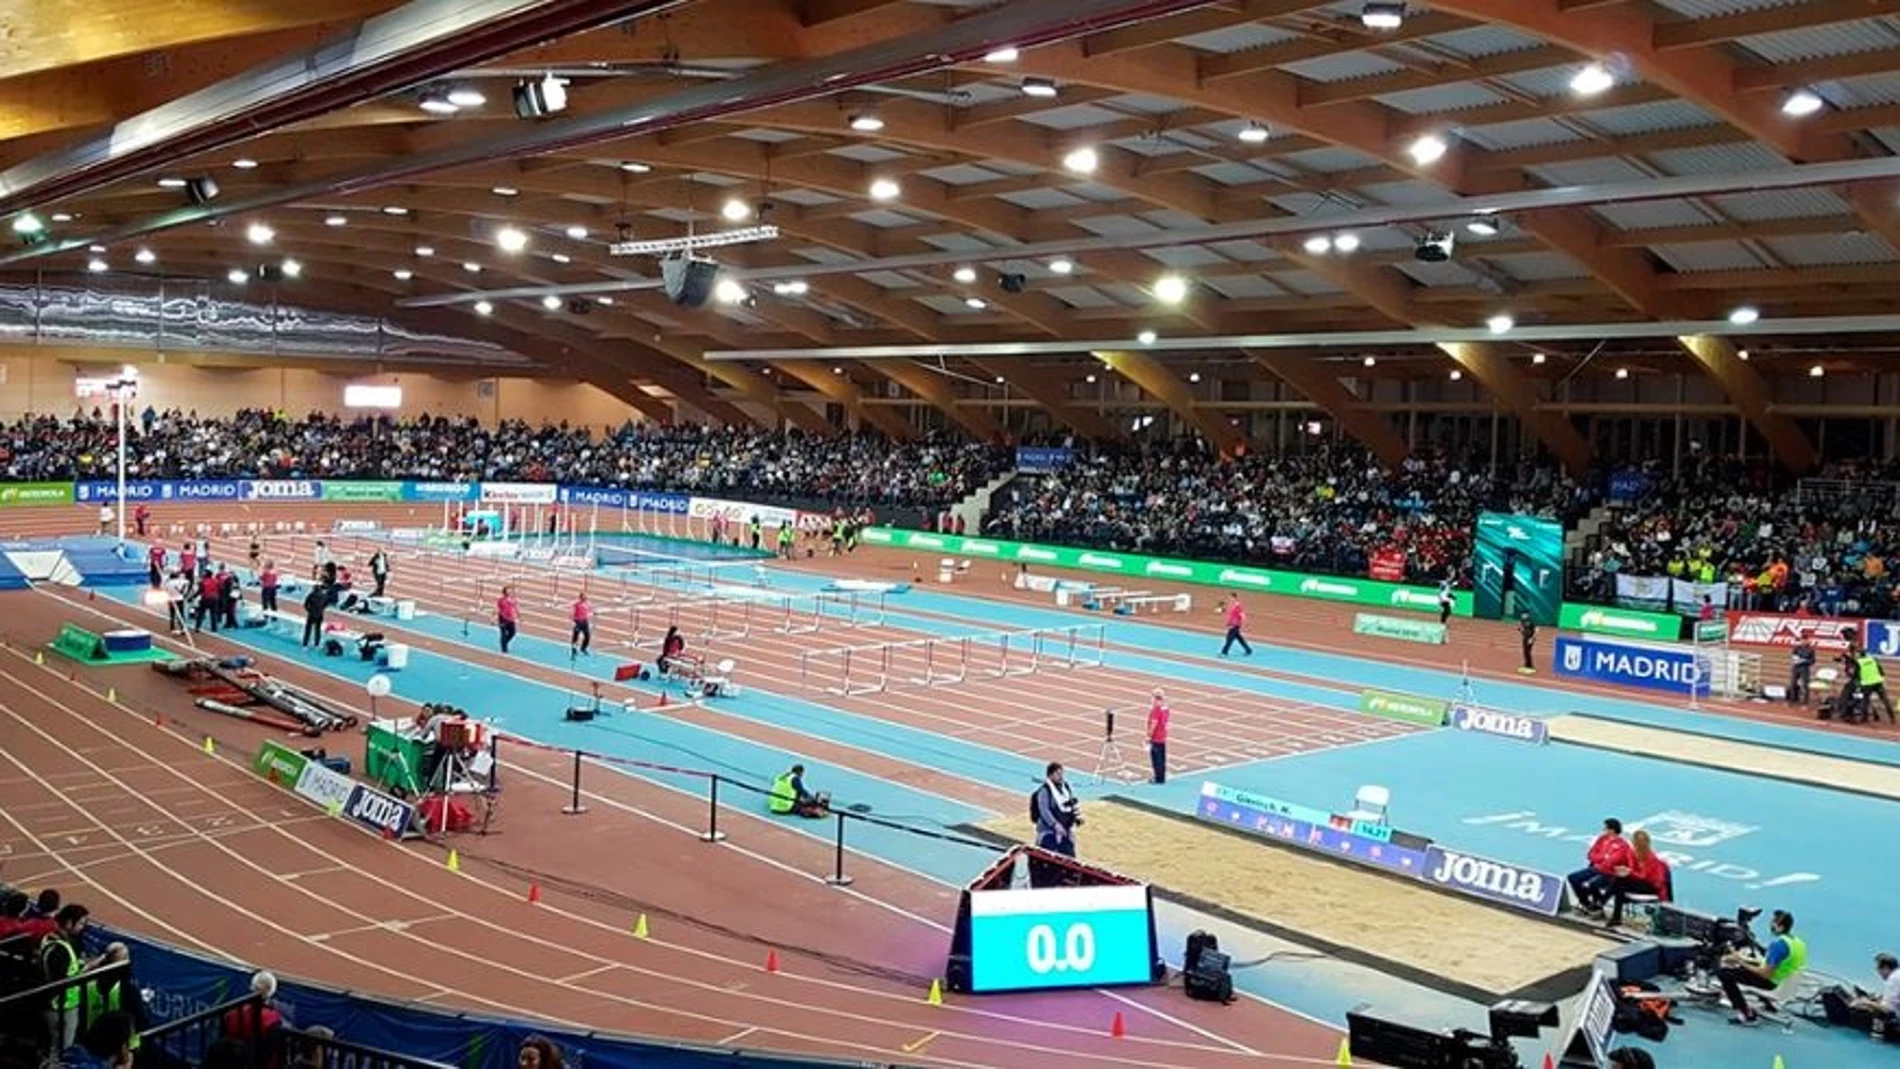 Atletismo.- (Previa) Gallur cierra el mejor atletismo 'indoor' con alerta de récord del mundo